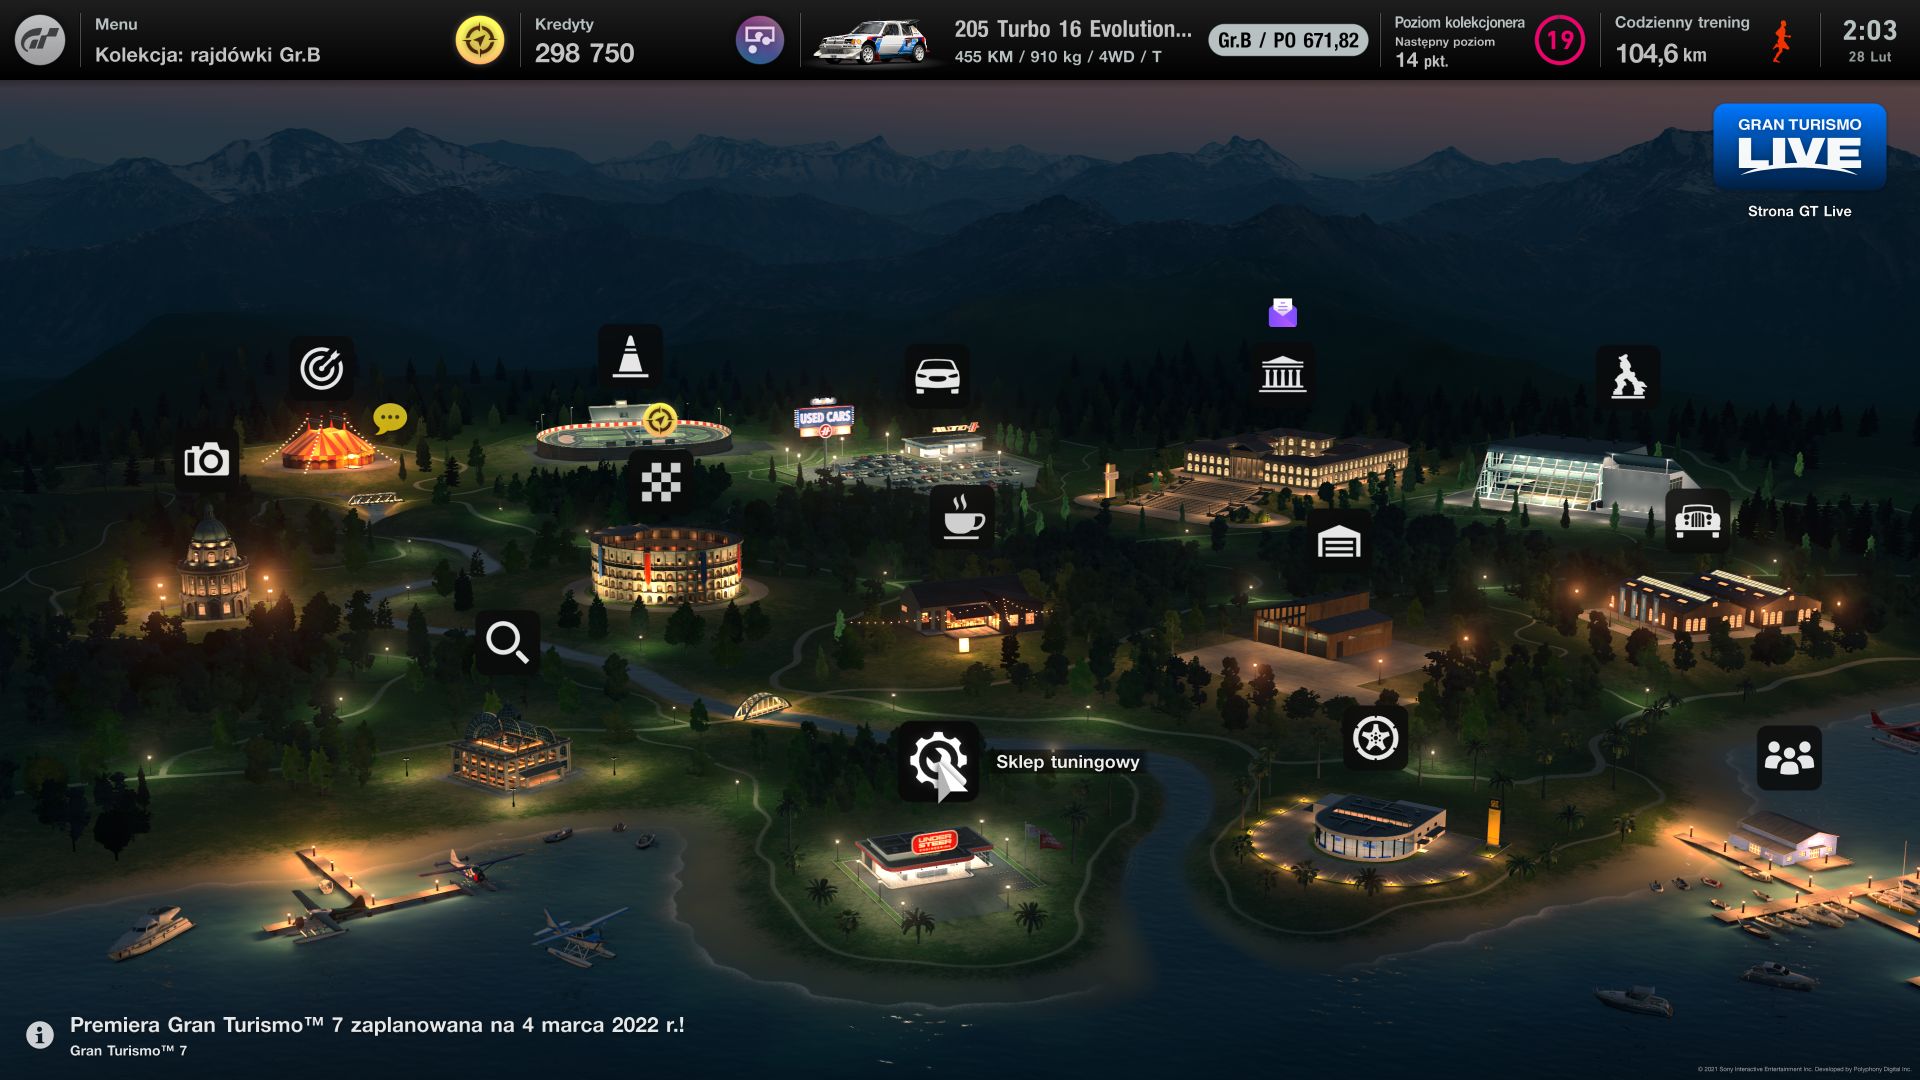 Choć Gran Turismo 7 powraca do konceptu mapy jako menu, nie jest już ona tak zagmatwana jak w przypadku czwartej odsłony